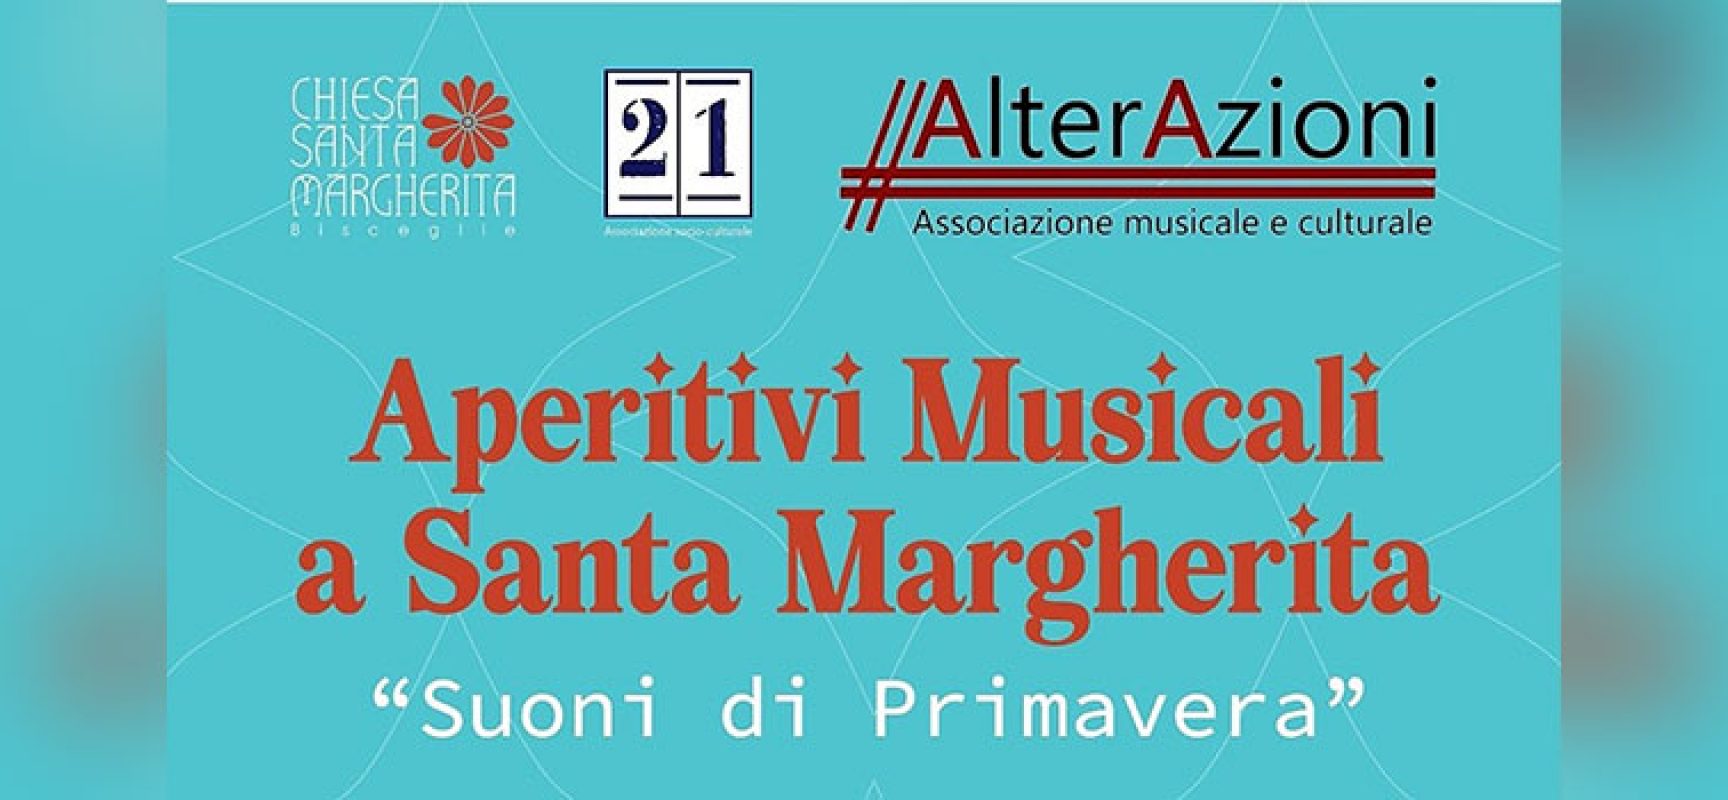 Aperitivi musicali a Santa Margherita per valorizzare beni culturali biscegliesi